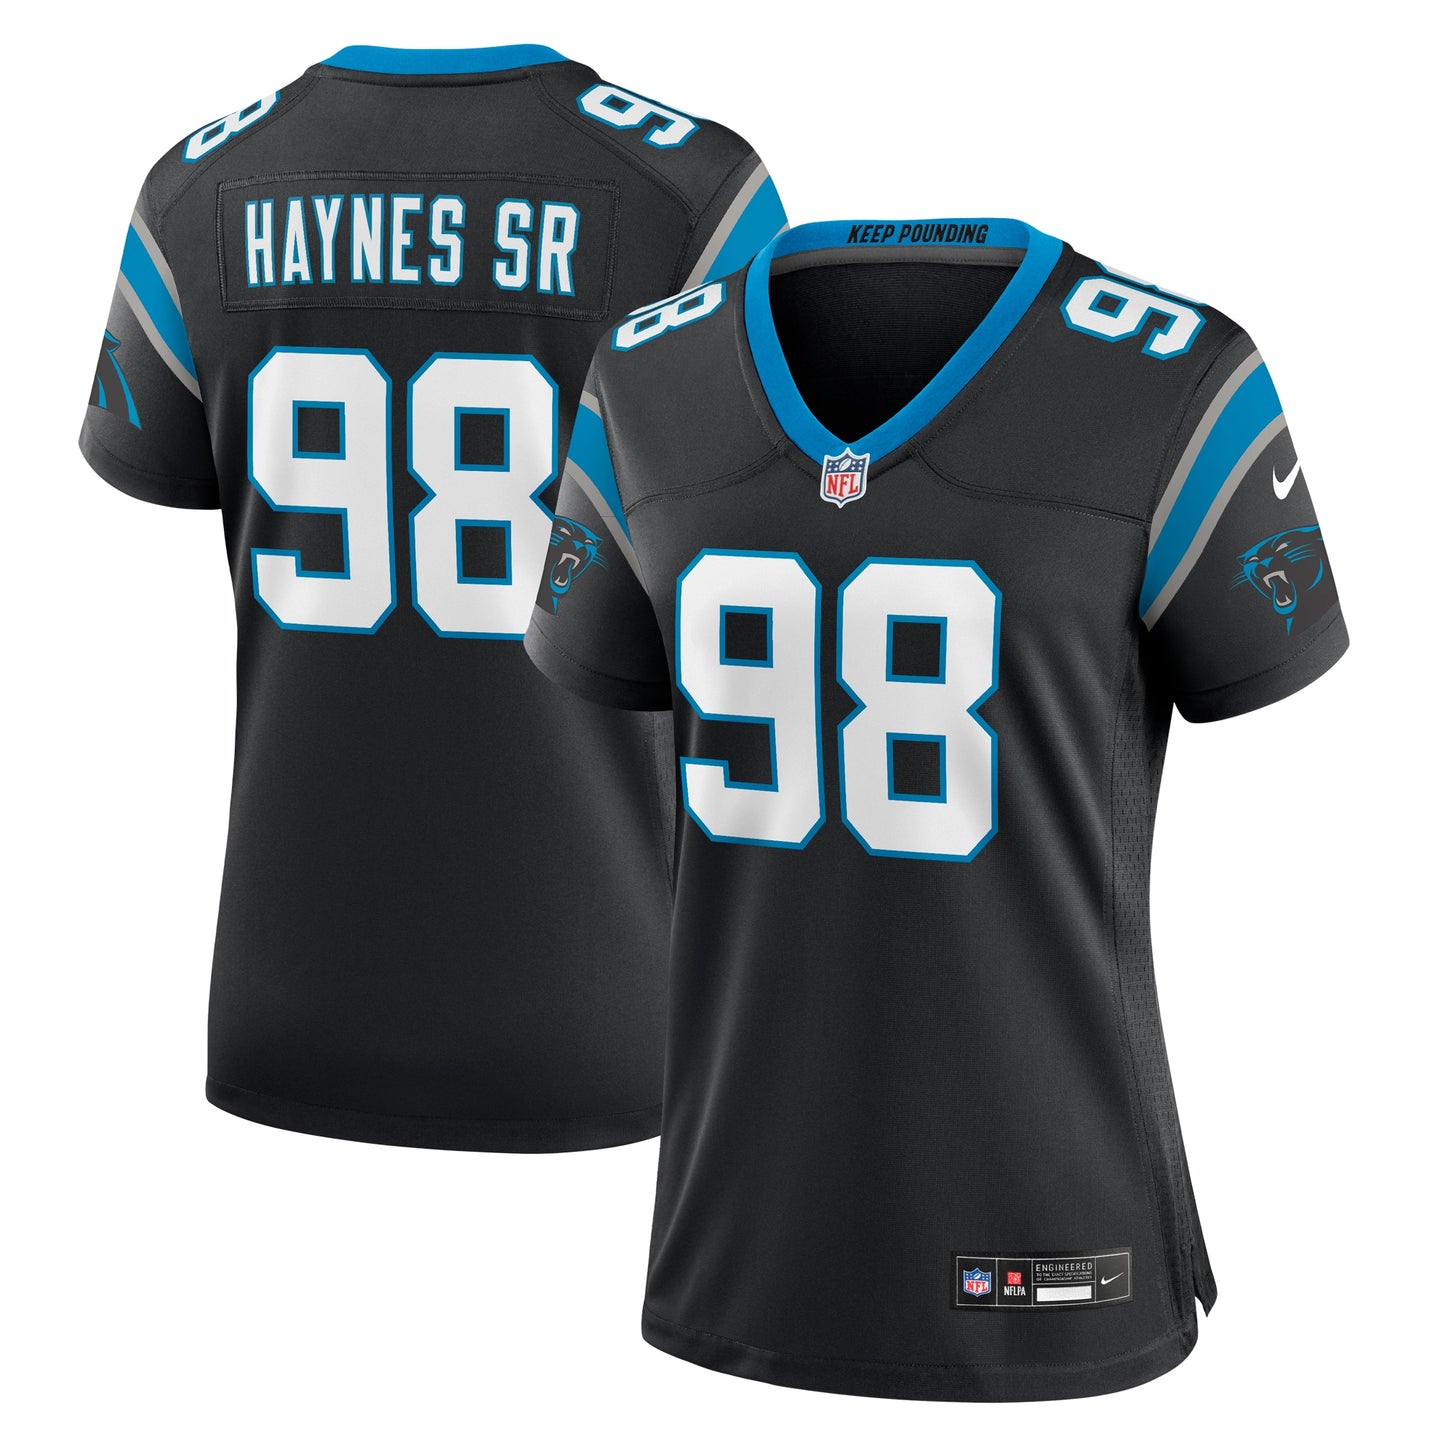 Marquis Haynes Sr. Carolina Panthers Nike Women's Team Game Jersey - Black